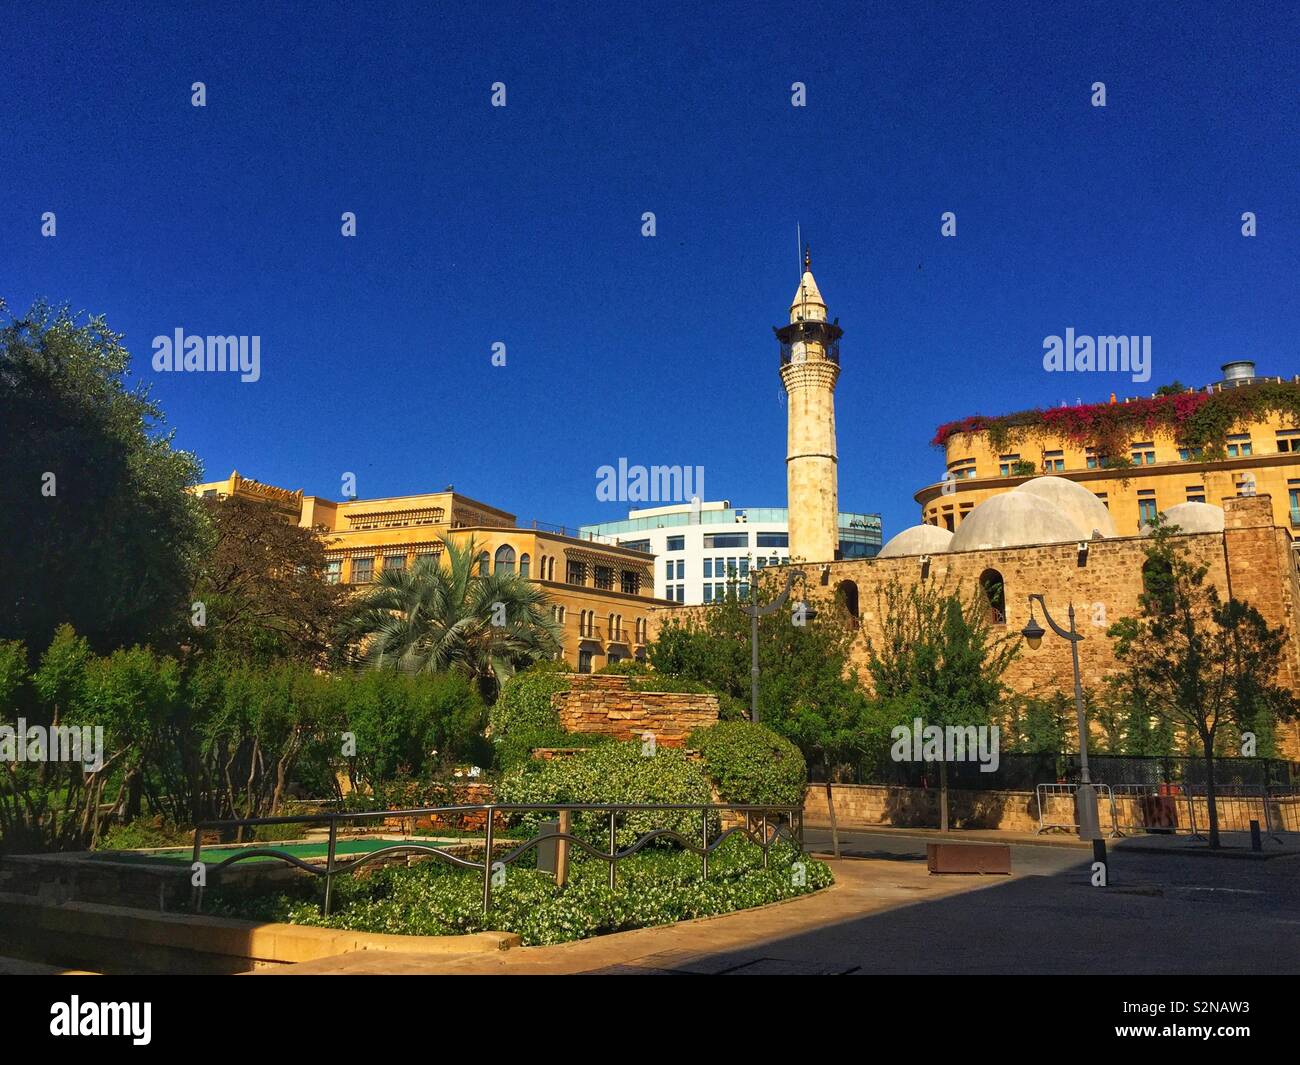 La moschea di vecchio centro cittadino di Beirut Libano Foto Stock